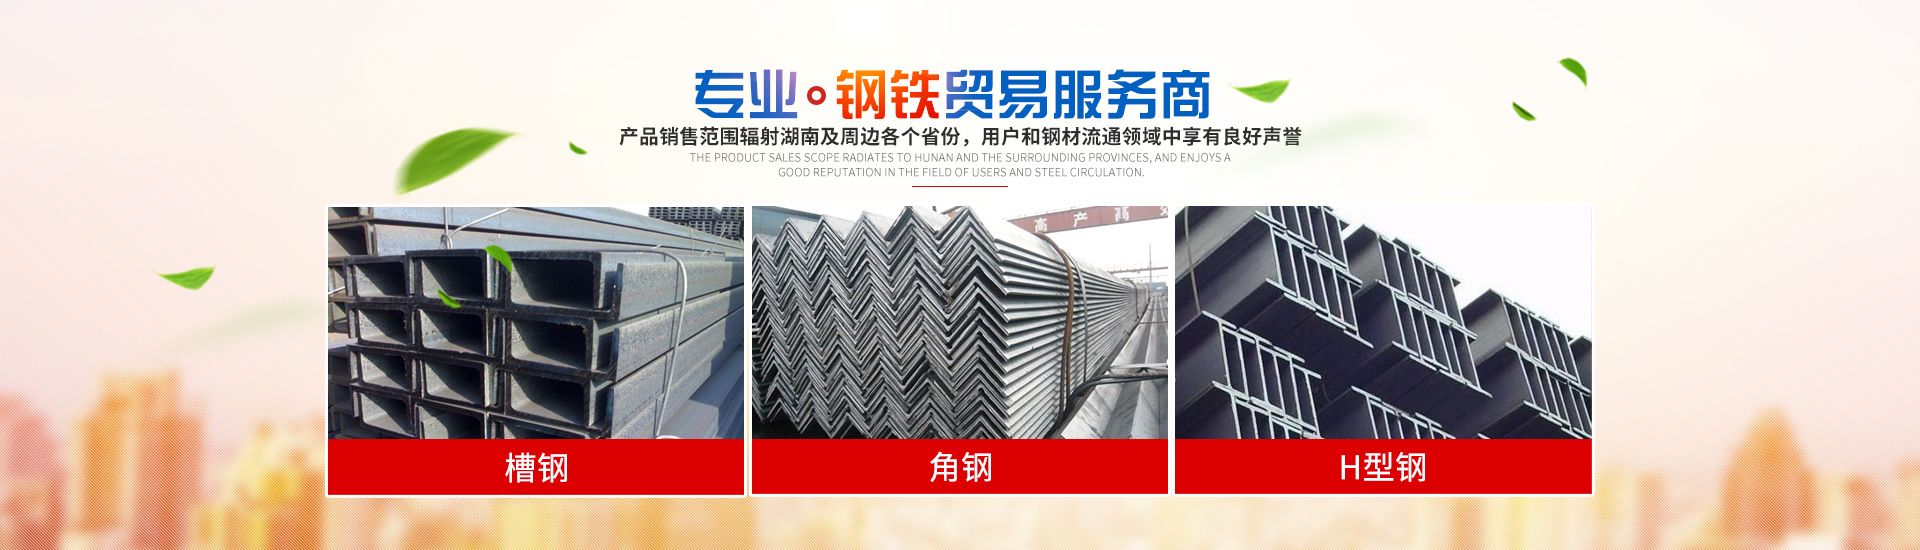 懷化宏瑞鋼材貿易有限公司_鋼材建材管材銷售